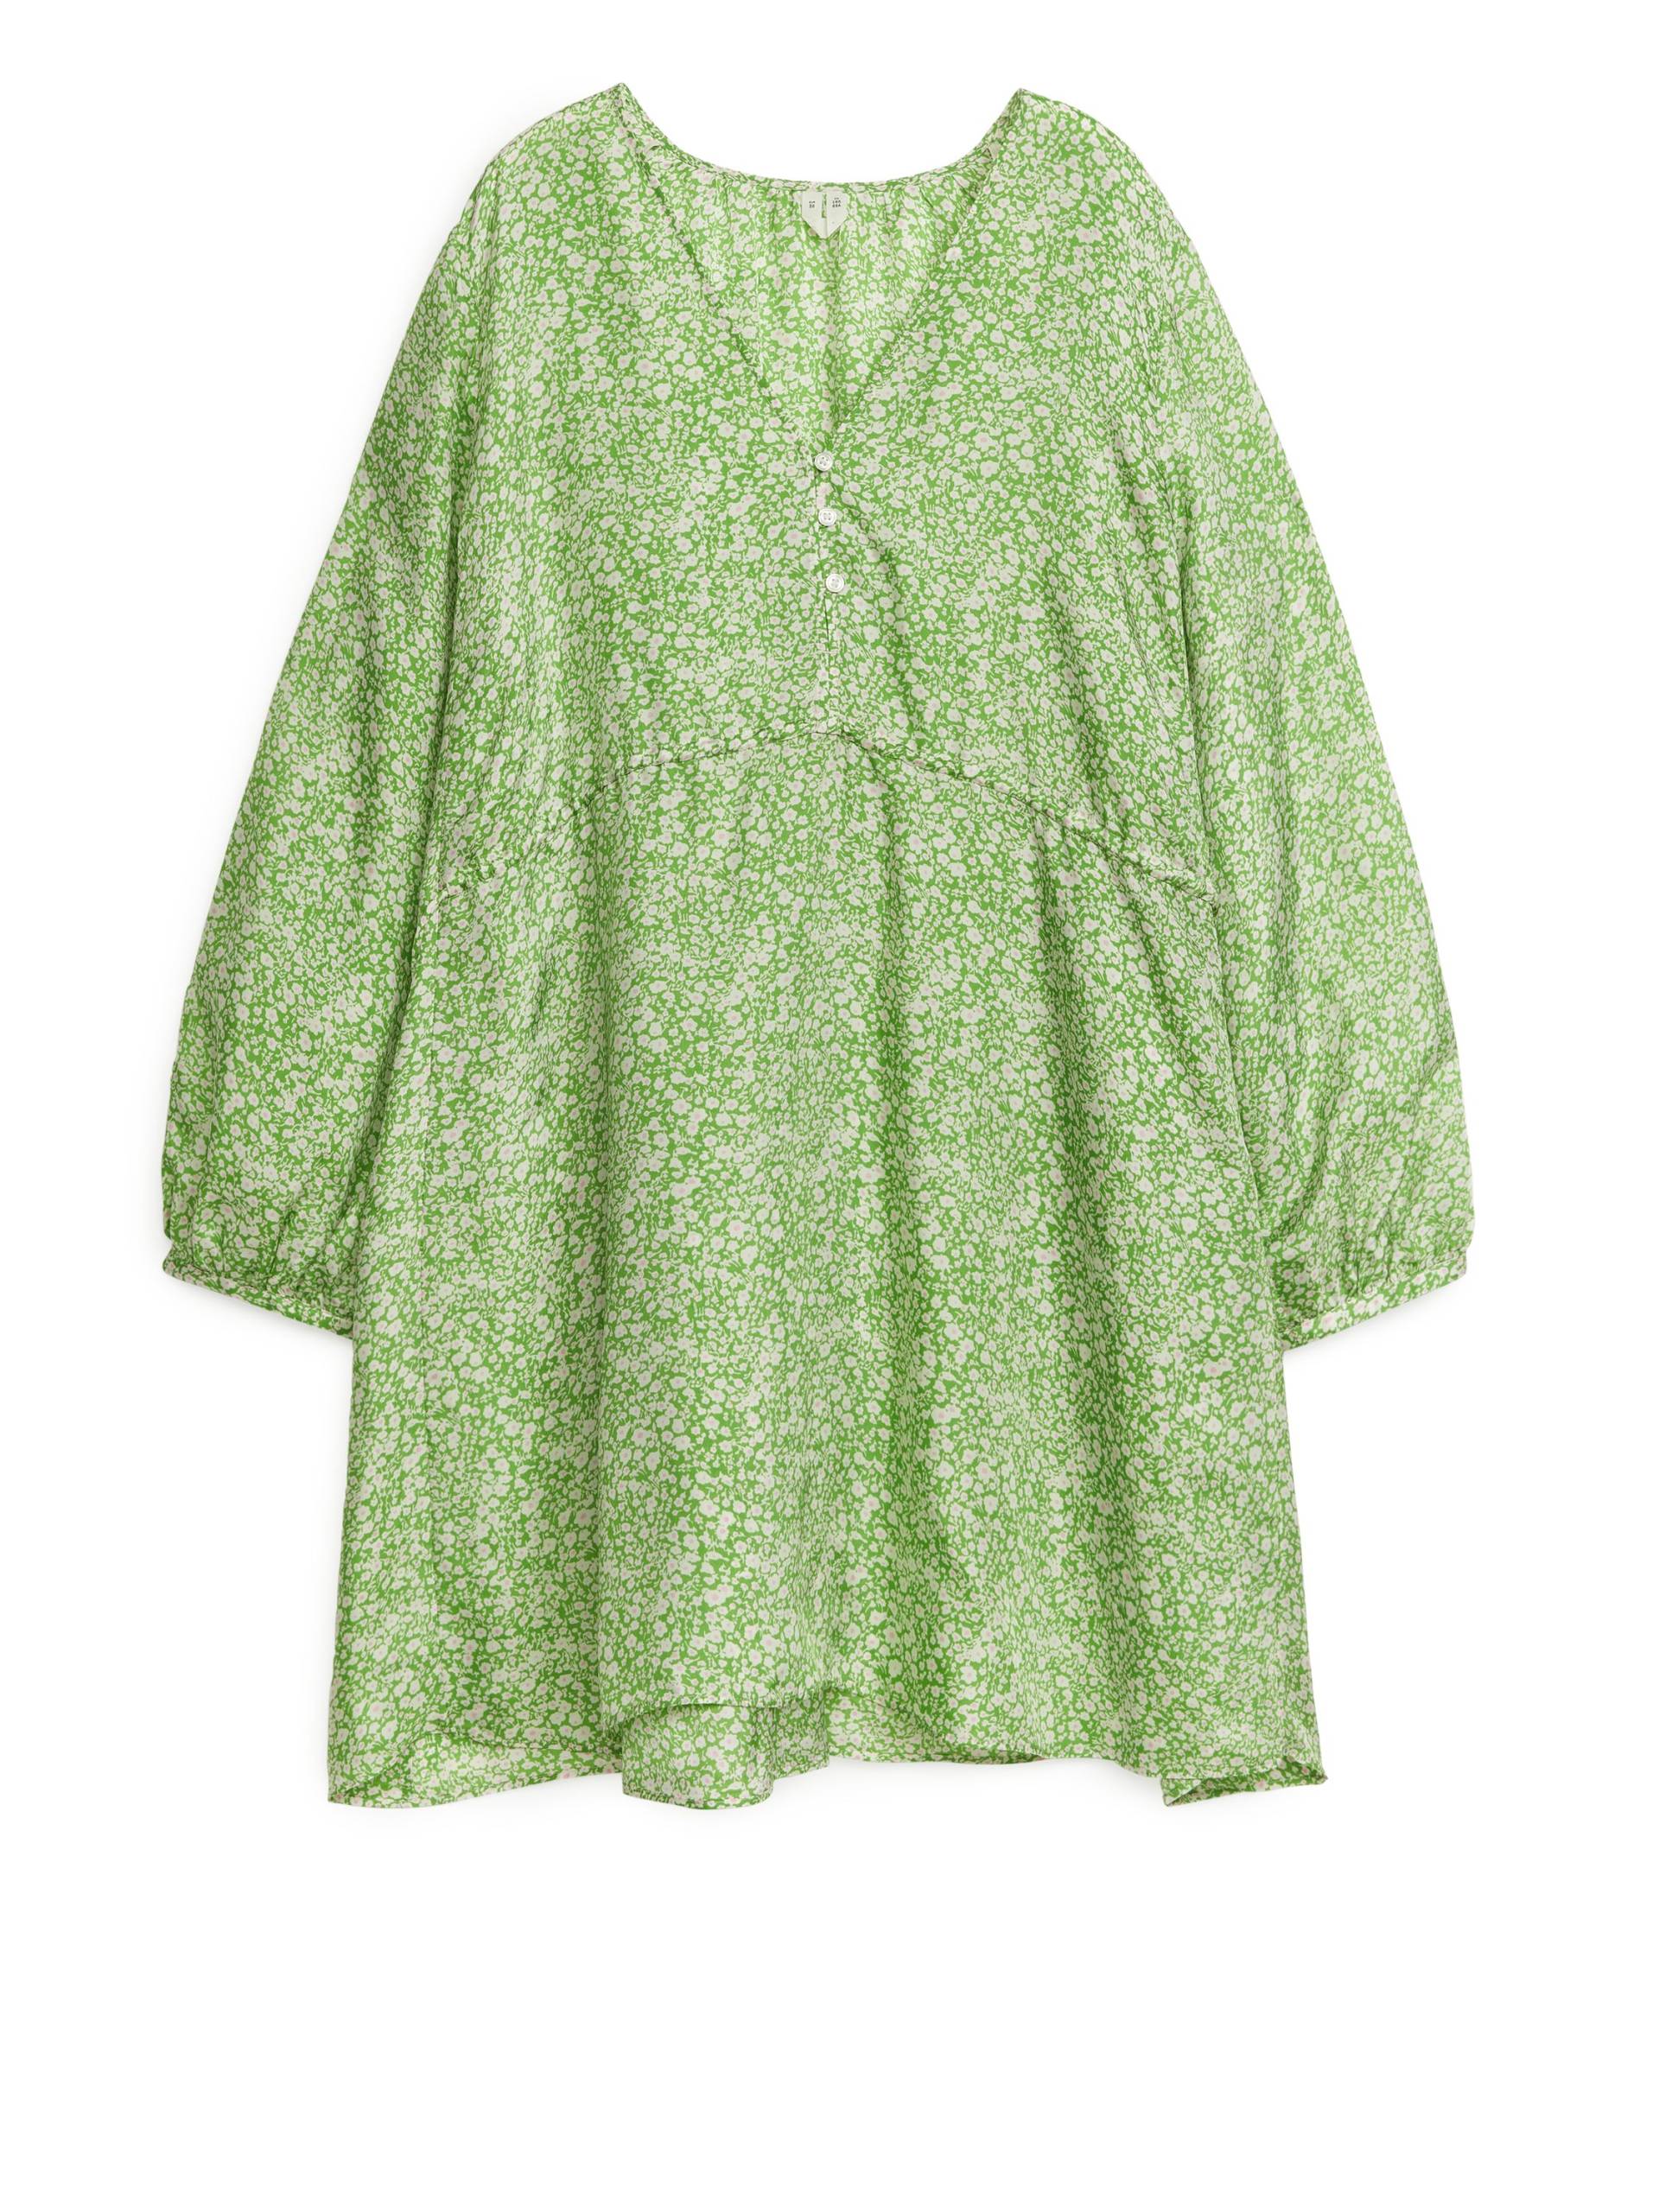 Arket Minikleid in A-Linie Grün/Weiß, Alltagskleider Größe 36. Farbe: Green/white von Arket